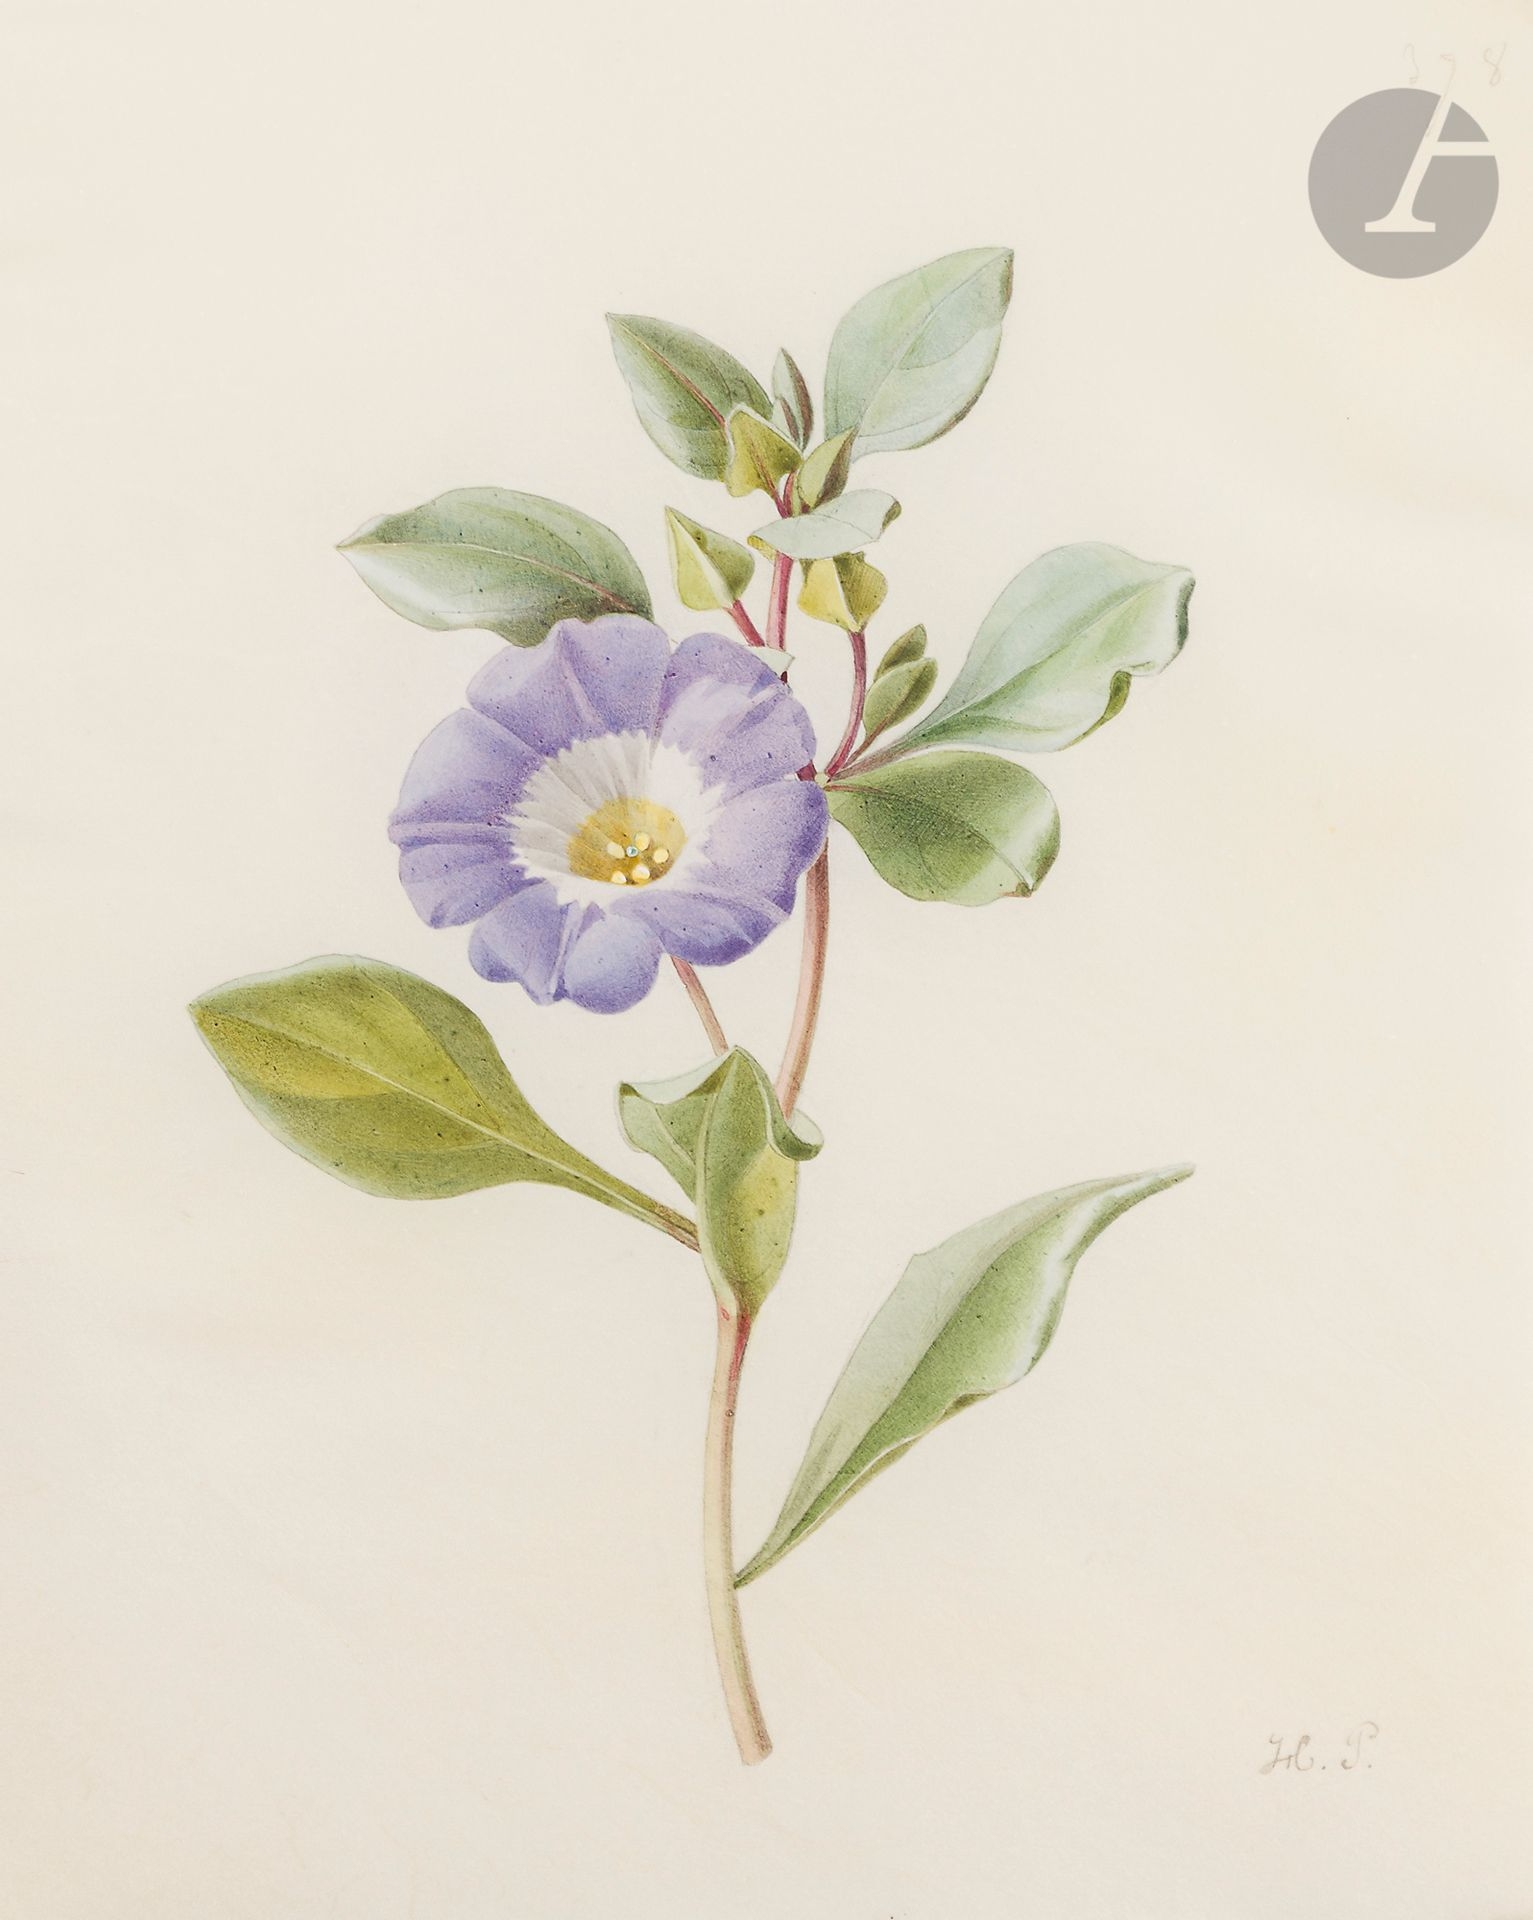 Étude de nolana; études de fleurs : une étude de pervenche et une étude de trèfle d’eau (Menyanthes trifoliata) by Henriette Paravey